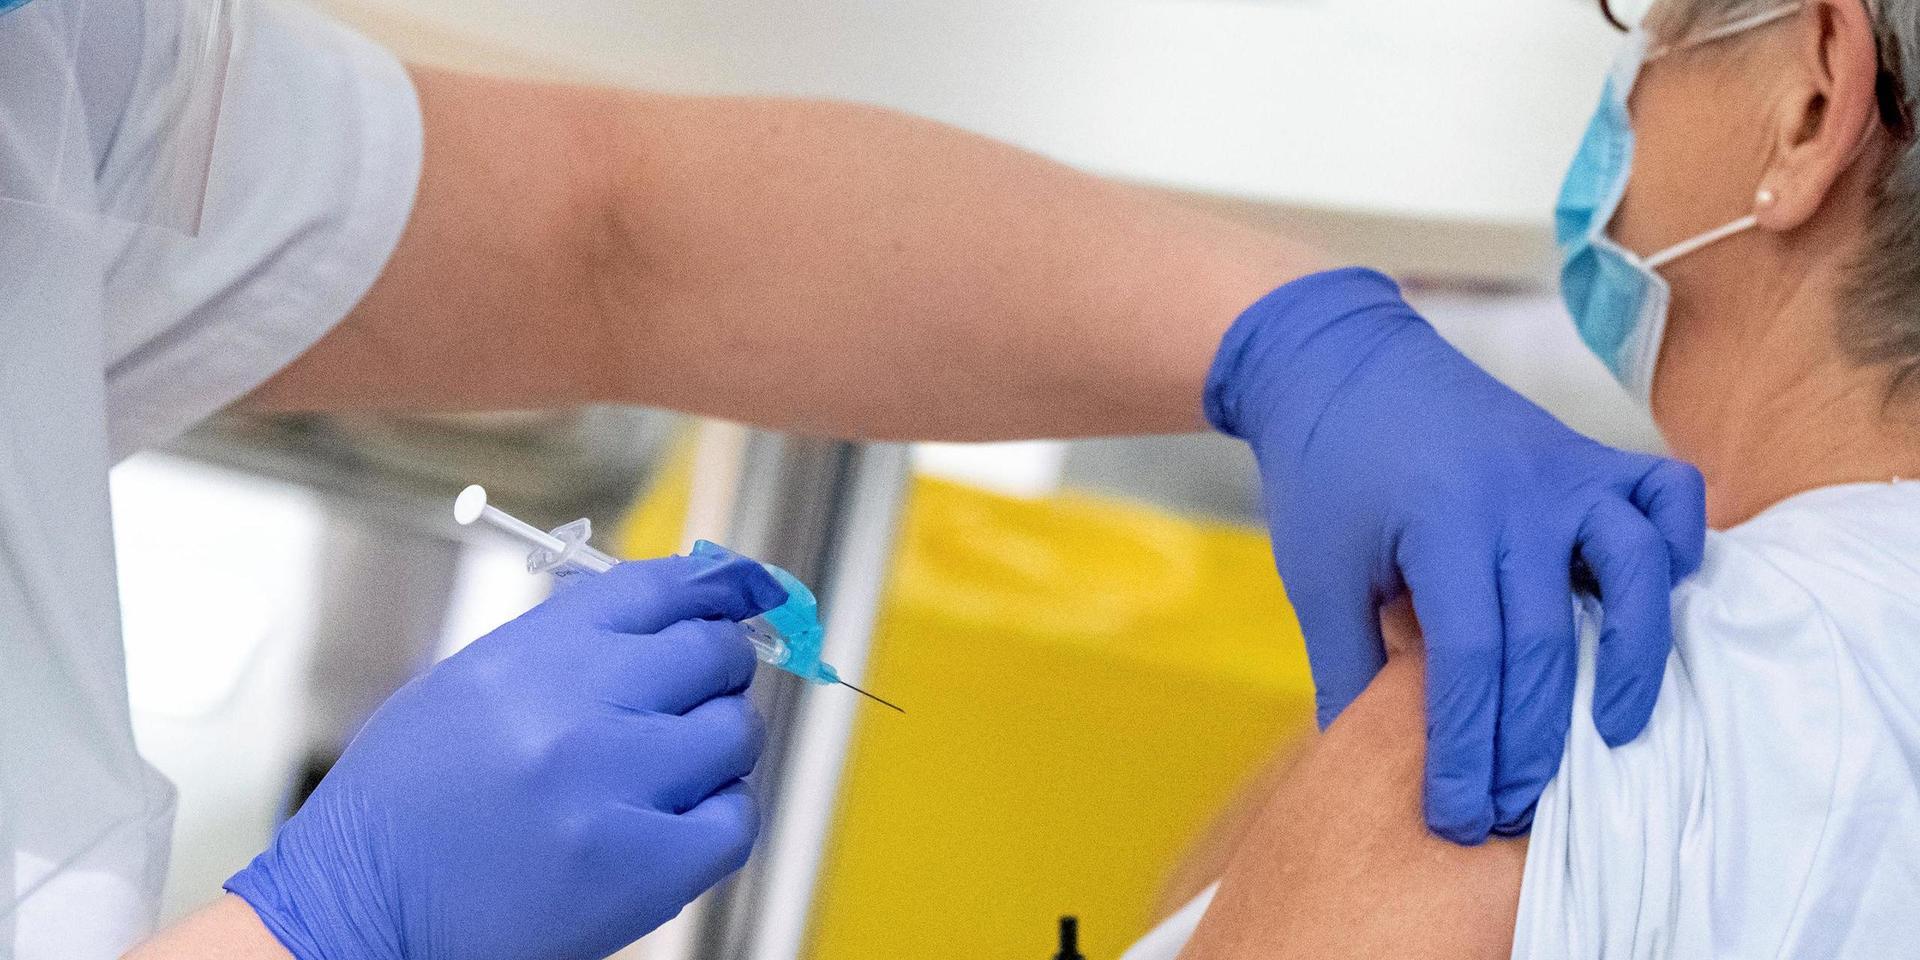 Nästan nio av tio hallänningar svarar i en enkät att de tänker vaccinera sig mot covid-19. Män är lite mer benägna än kvinnor och intresset stiger också med åldern. Vid vaccinationen mot svininfluensa 2009 vaccinerade sig 60 procent.